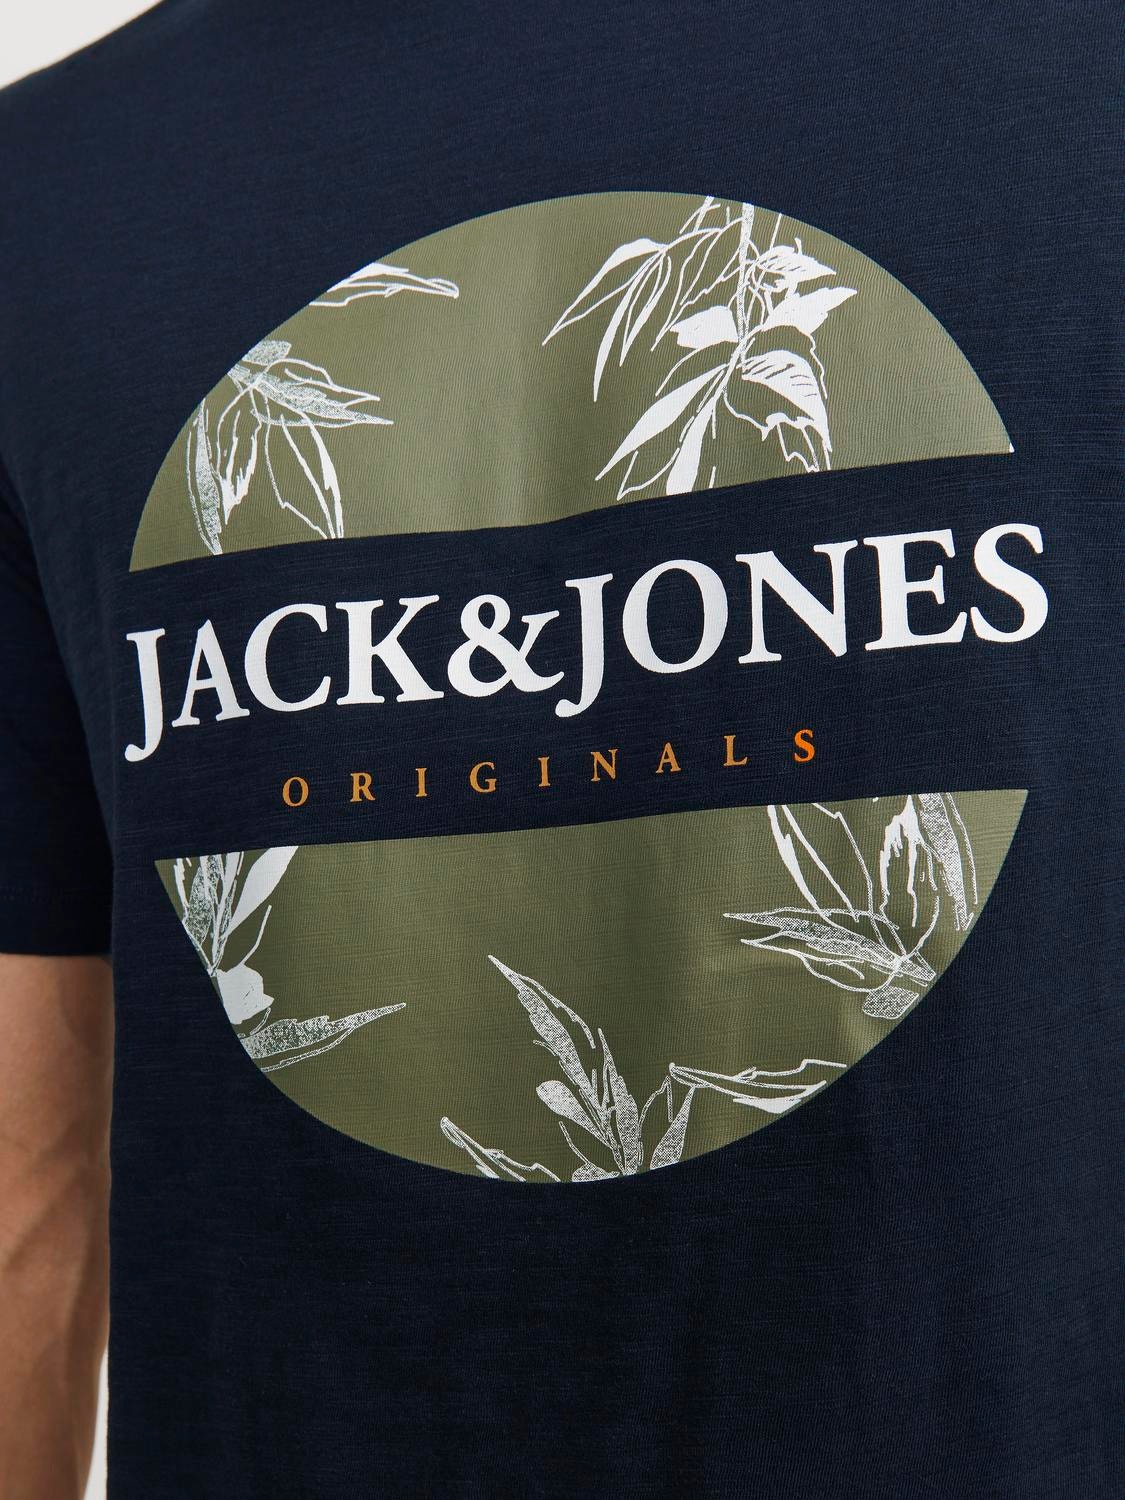 Jack & Jones T-shirt Imprimé Col rond -Navy Blazer - 12255042